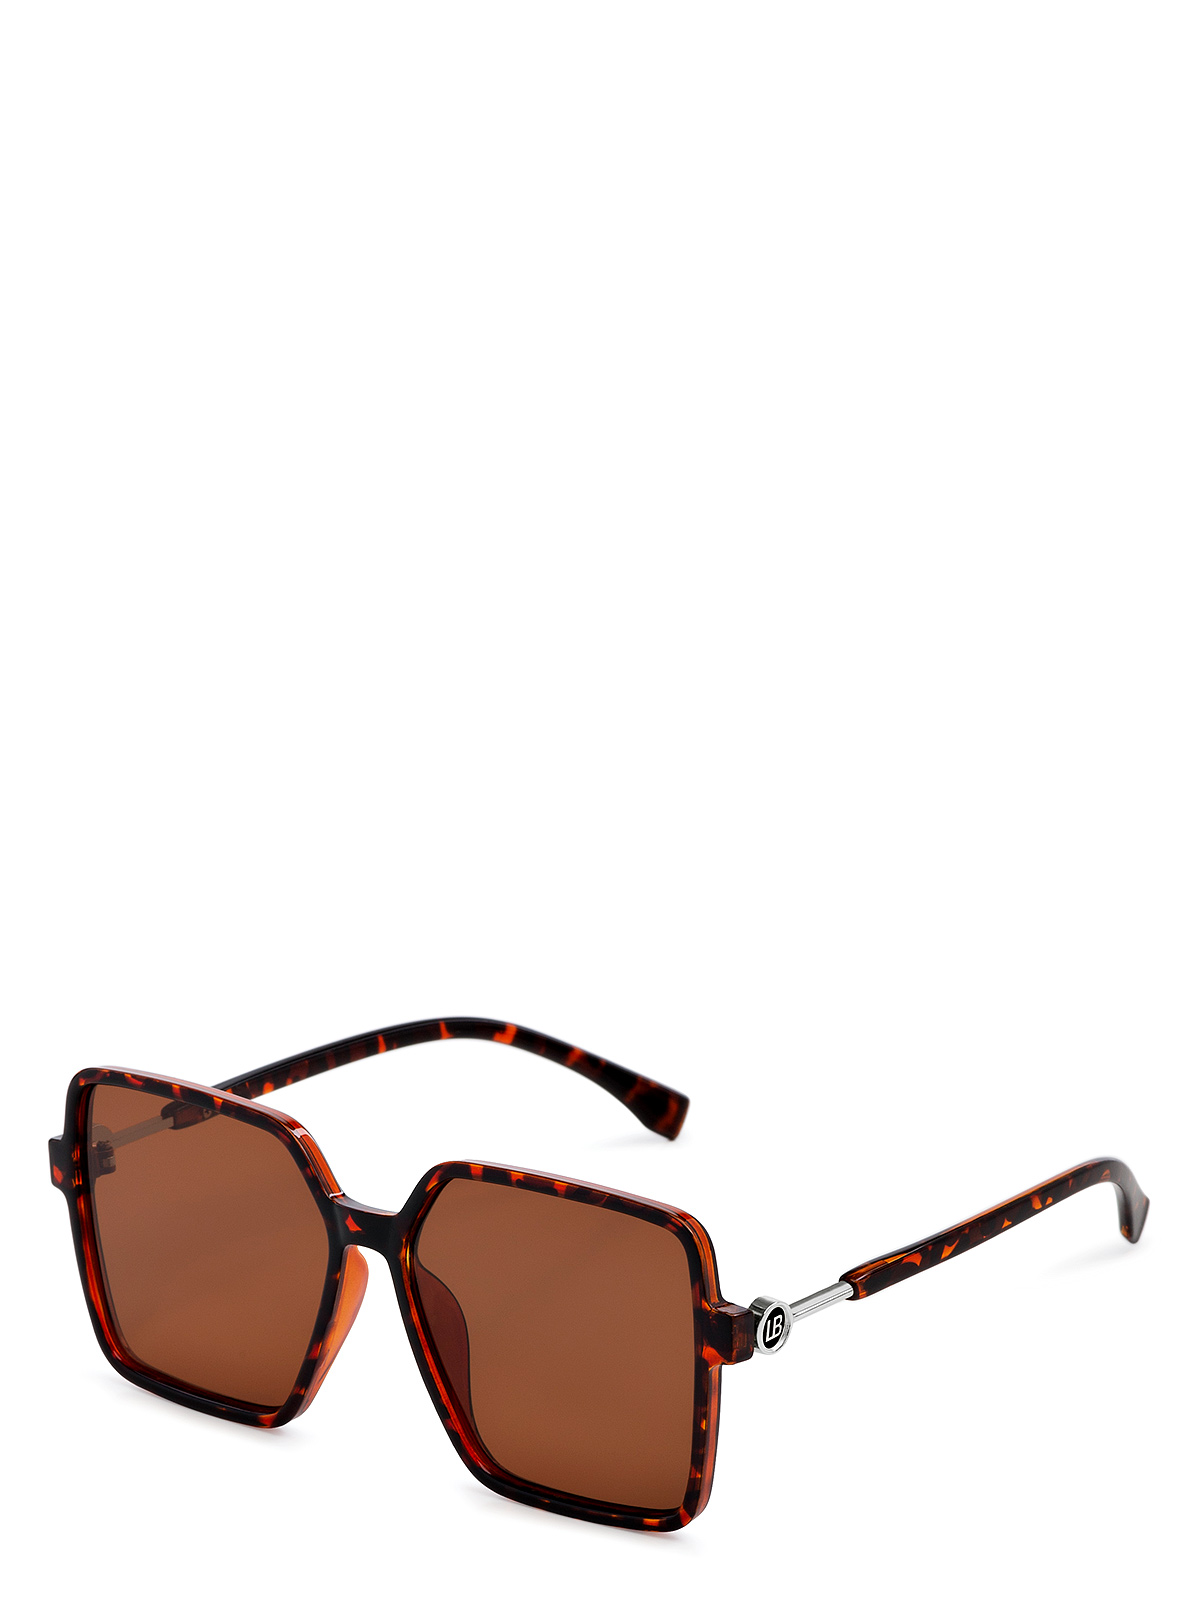 Солнцезащитные очки женские Labbra LB-230005 коричневые